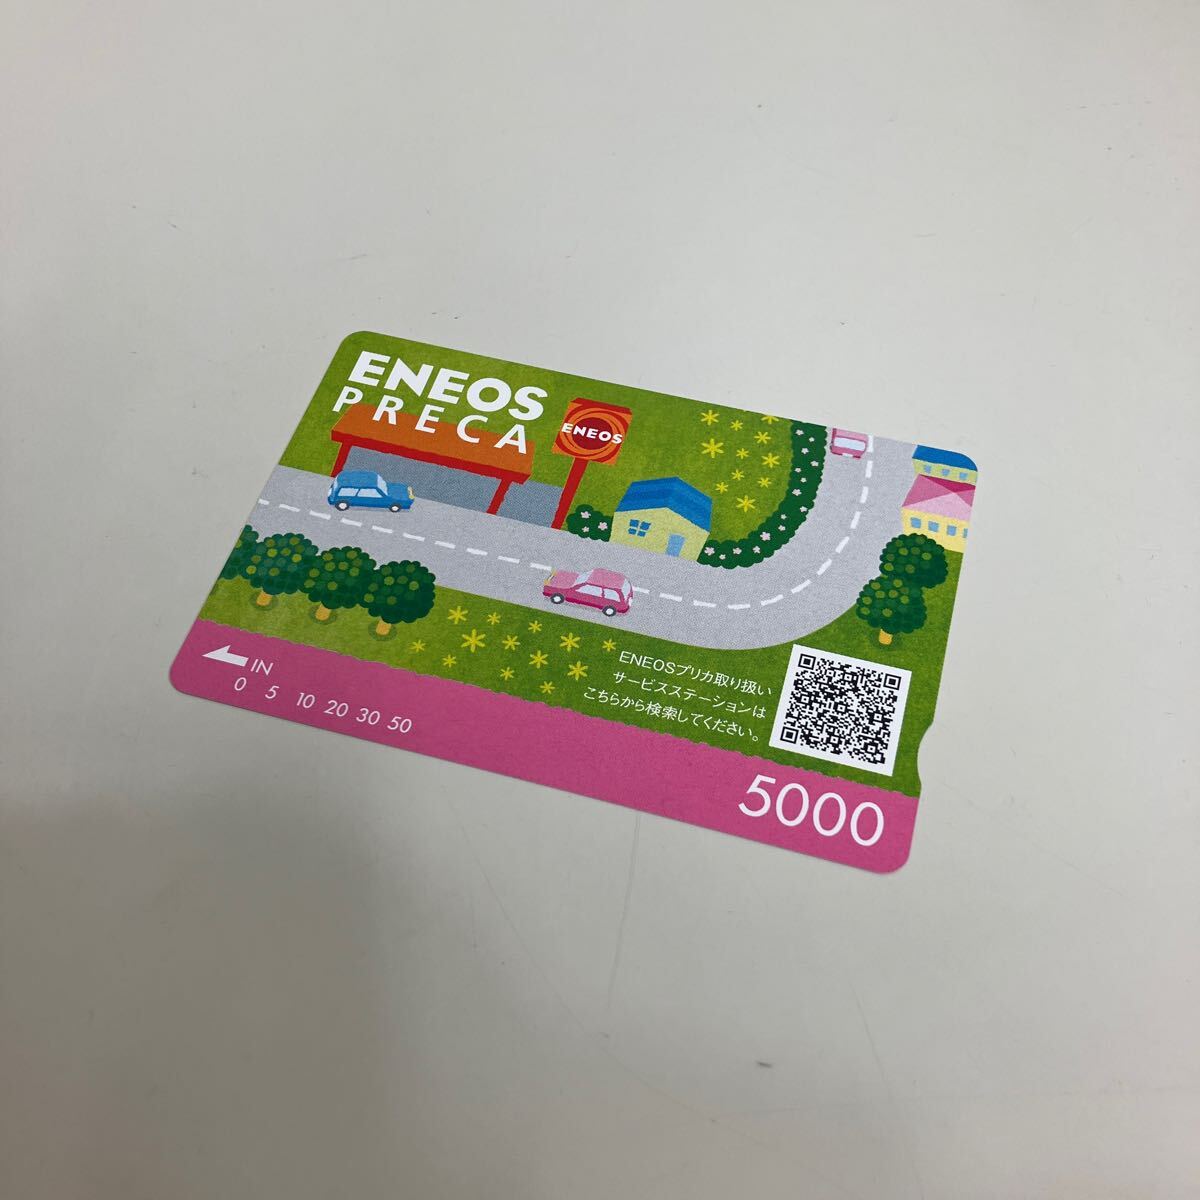 新品未使用品 ENEOSプリカ 5000円 エネオス 金券 チケット プリペイドカード 同梱不可 ALP-T-757の画像1